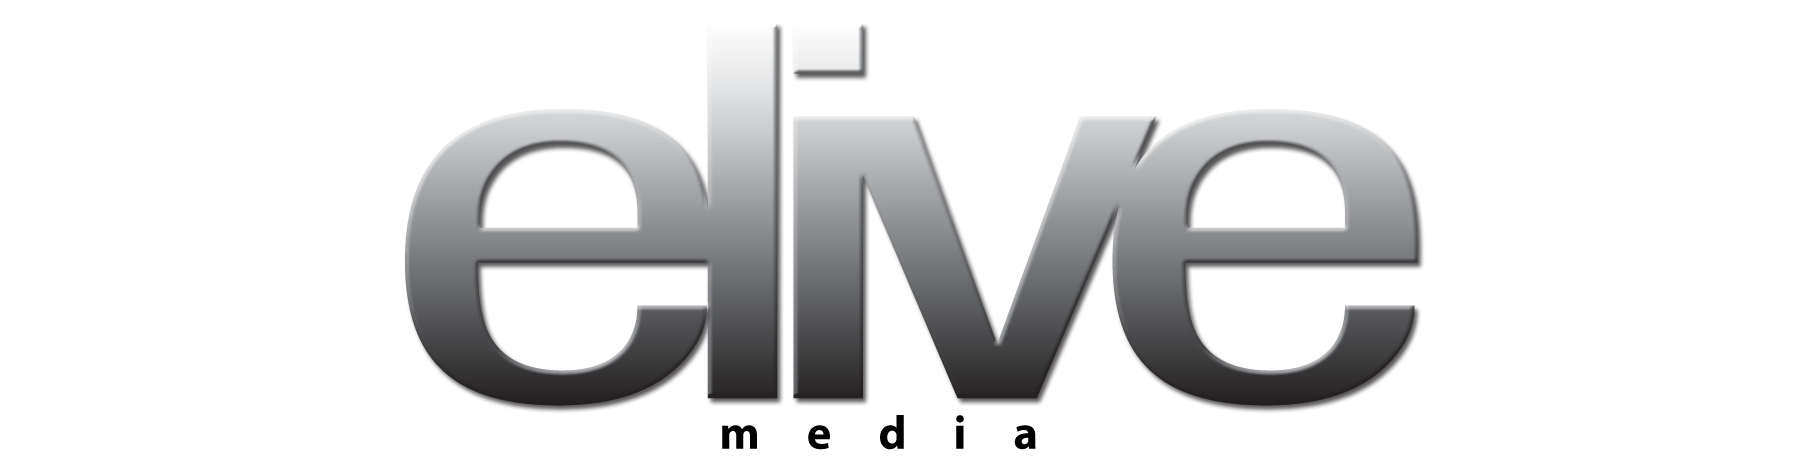 elive media logo - horizontal.png